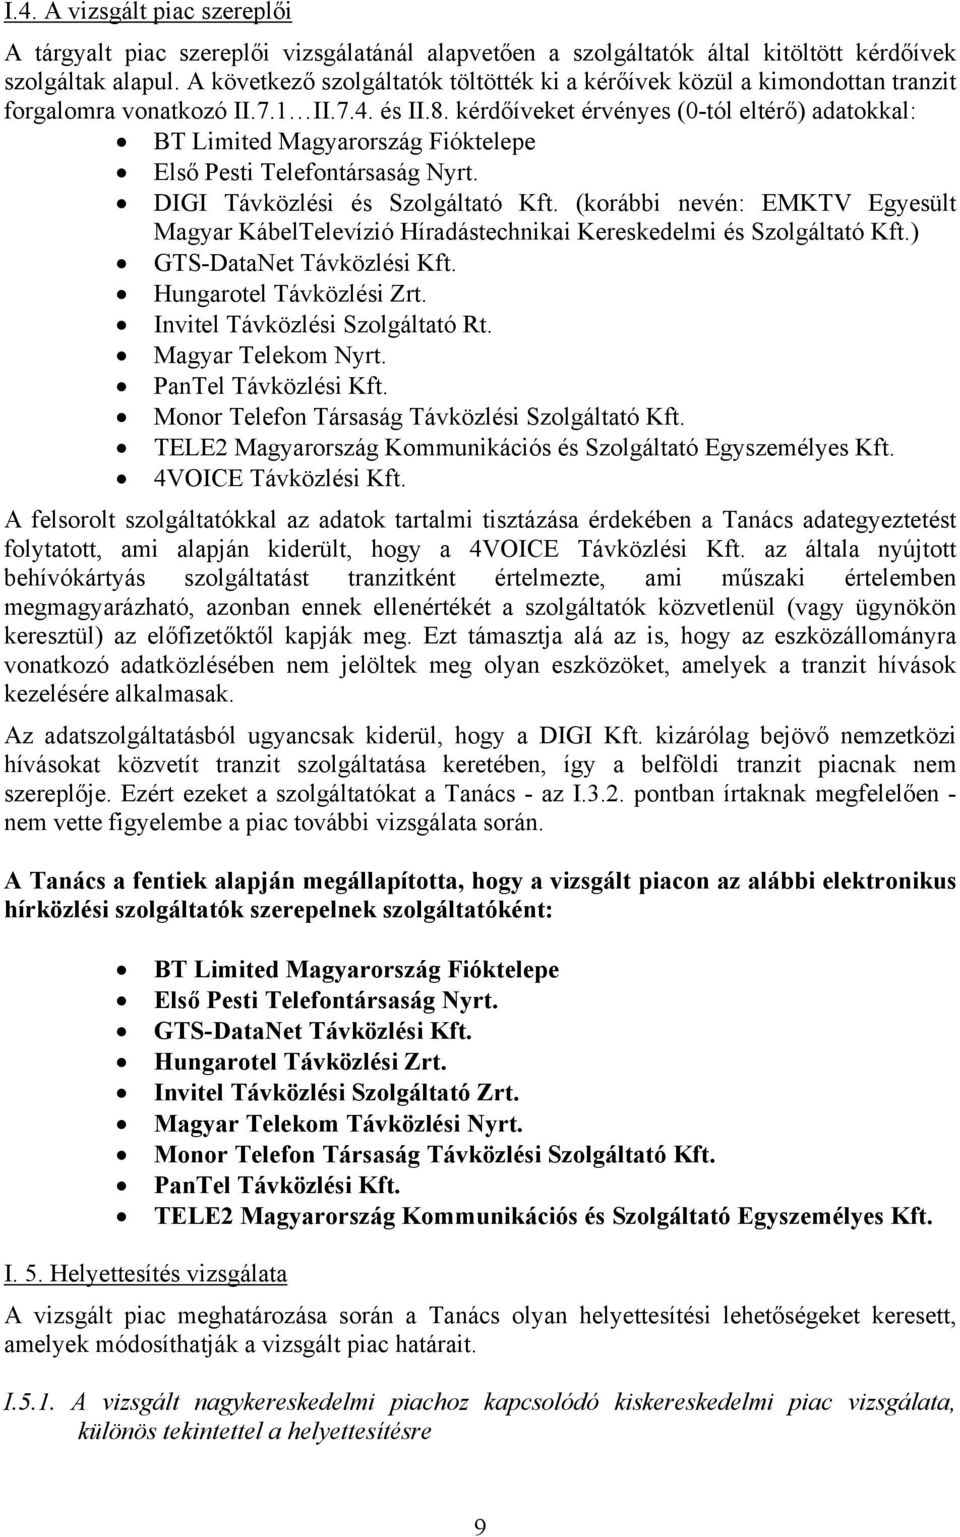 kérdőíveket érvényes (0-tól eltérő) adatokkal: BT Limited Magyarország Fióktelepe Első Pesti Telefontársaság Nyrt. DIGI Távközlési és Szolgáltató Kft.